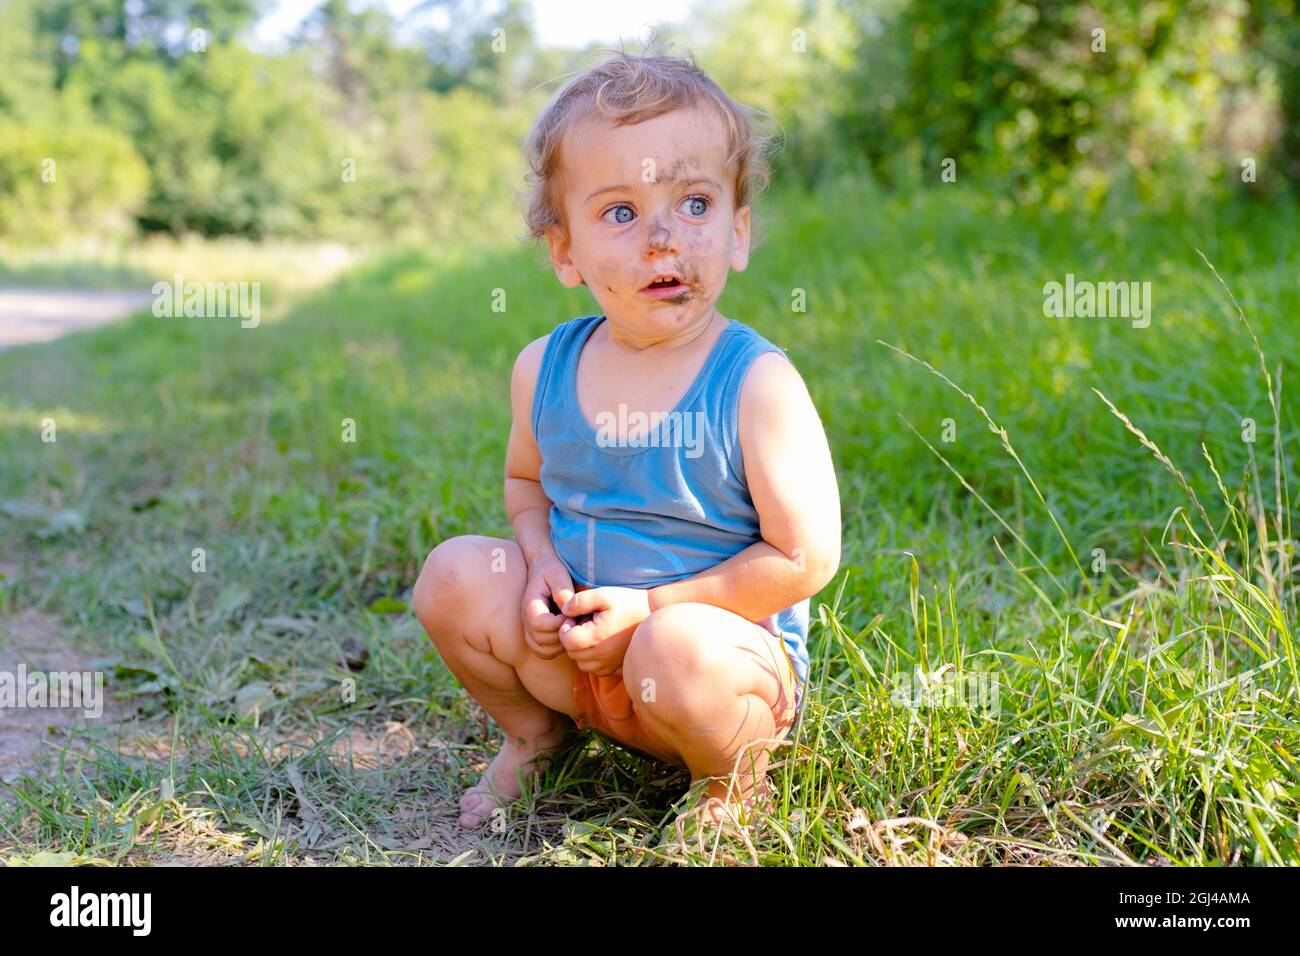 Überrascht hockt der kleine Junge auf dem Gras. Das Gesicht des Jungen ist mit Schmutz verschmiert Stockfoto